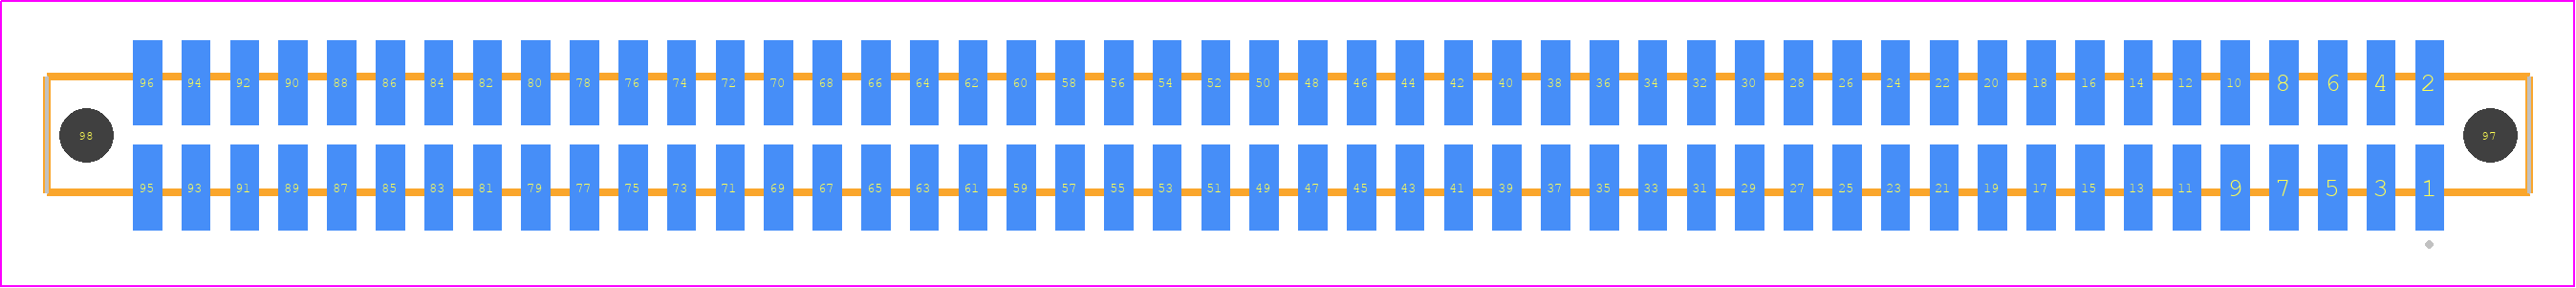 SFM-148-02-H-D-A-K-TR - SAMTEC PCB footprint - Other - Other - SFM-148-YY-XXX-D-A-K-TR